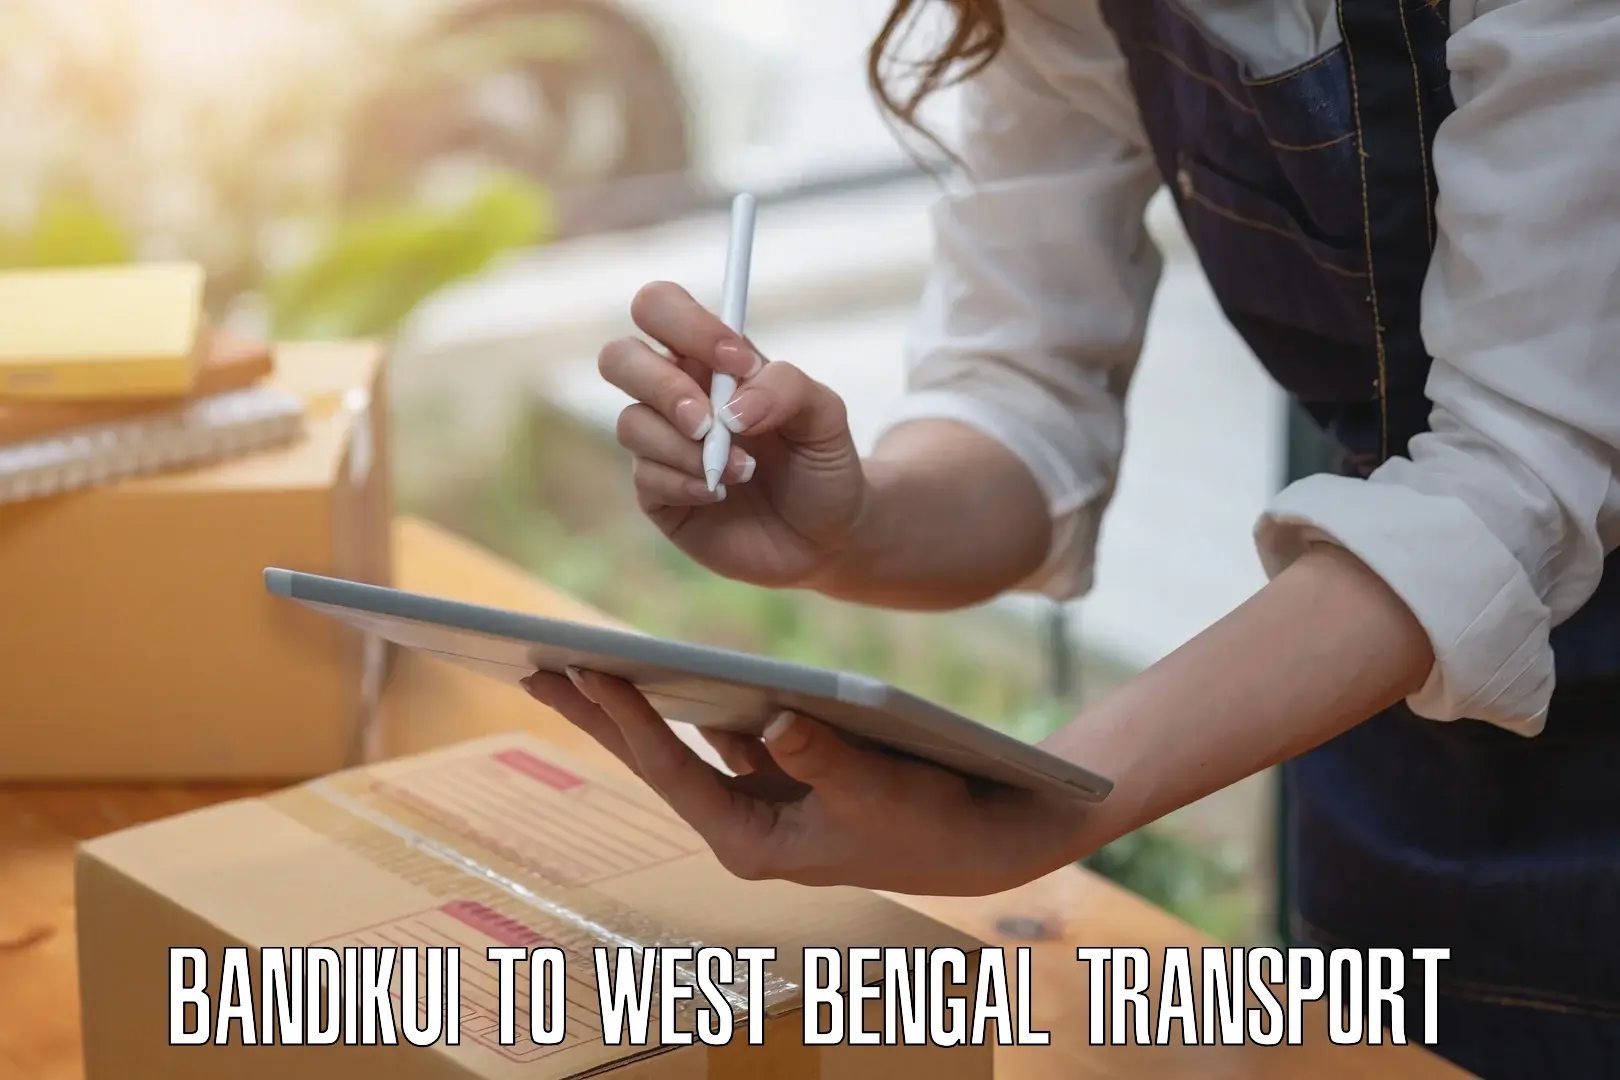 Daily transport service Bandikui to Murshidabad